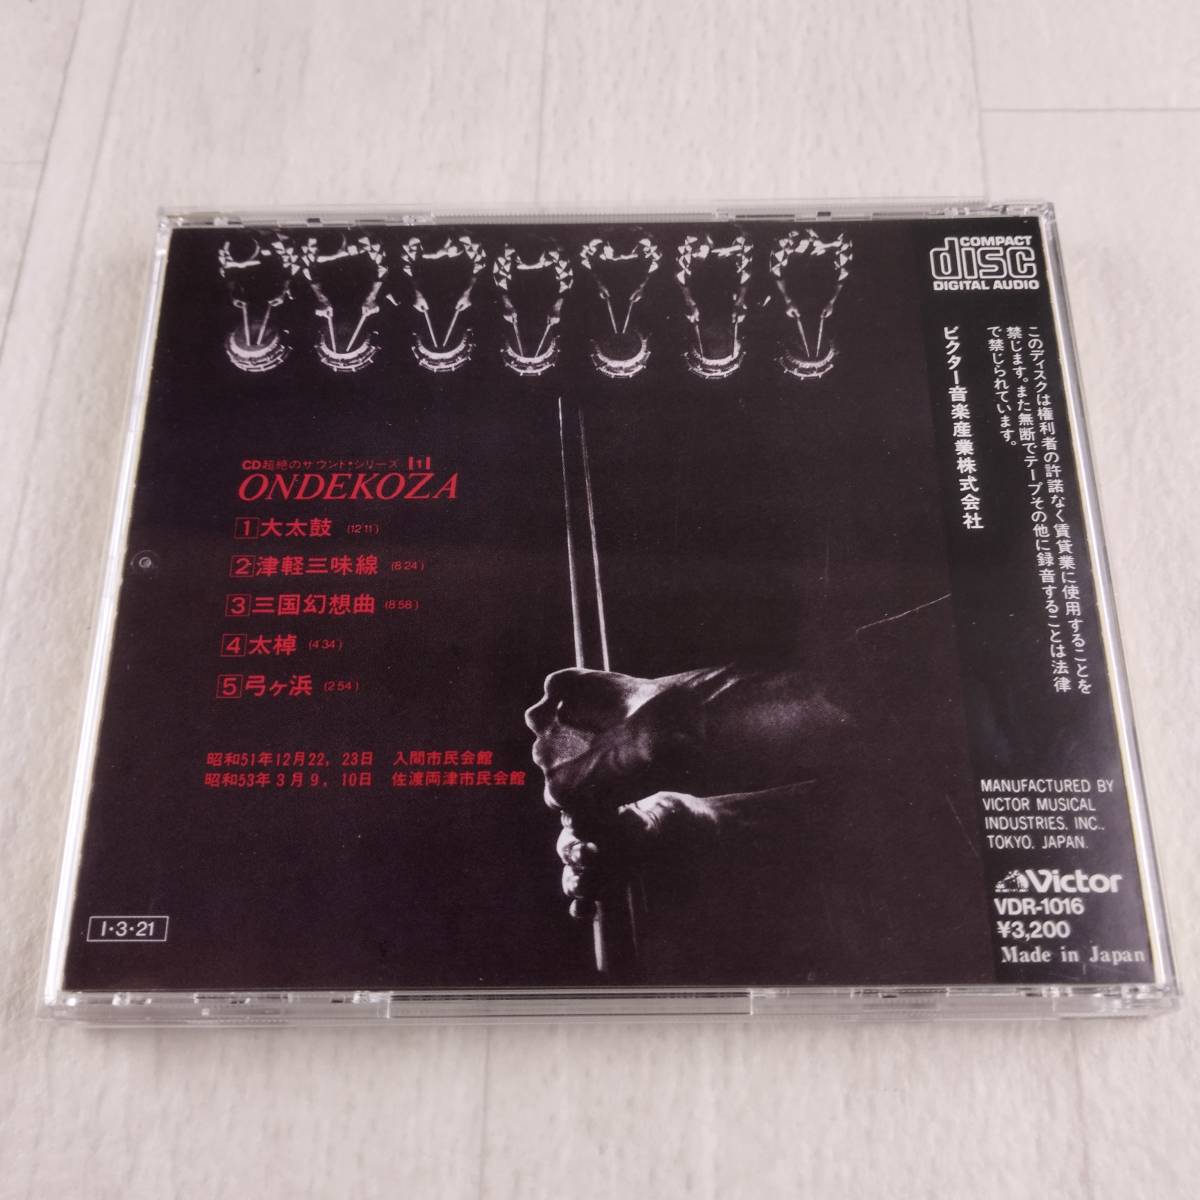 1MC8 CD 超絶のサラウンド シリーズ1 鬼太鼓座 _画像2